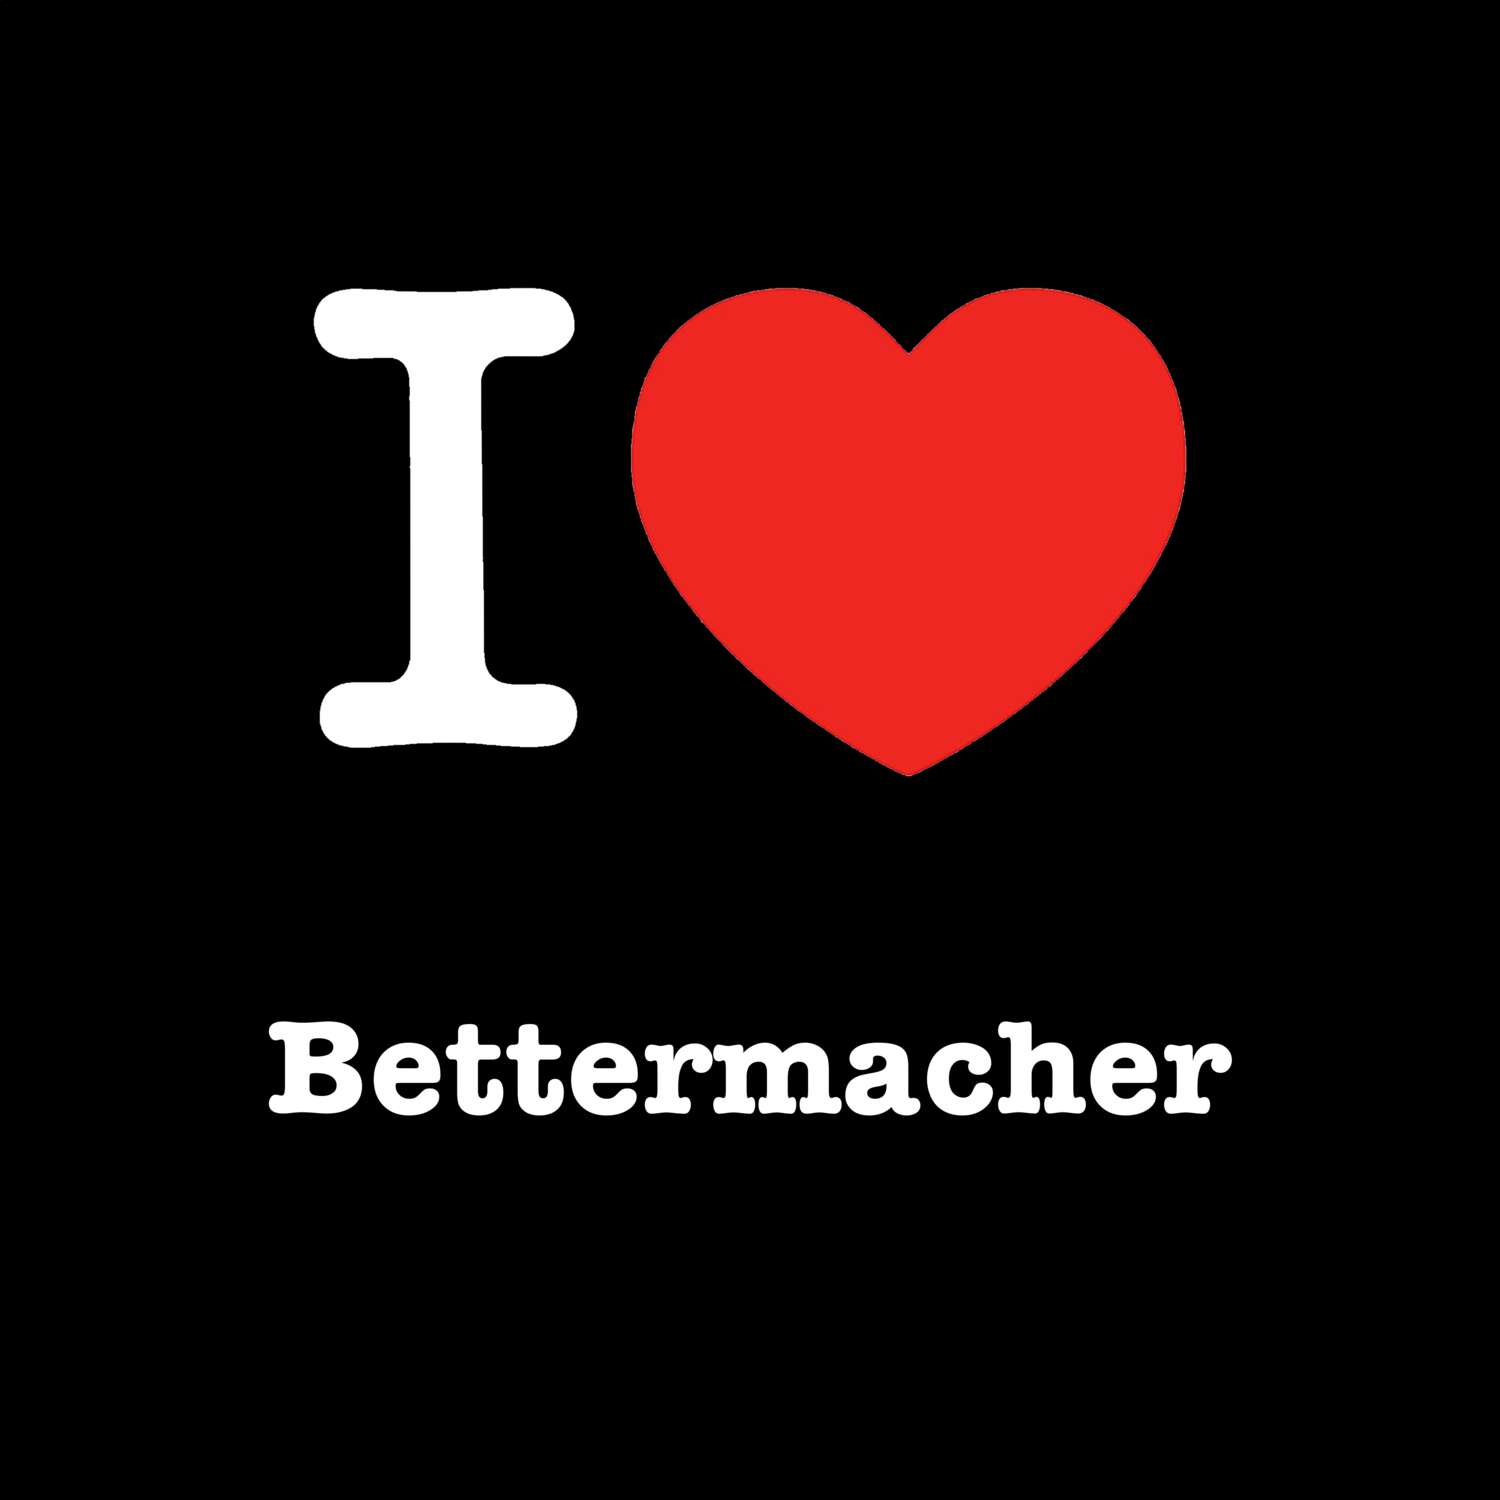 Bettermacher T-Shirt »I love«